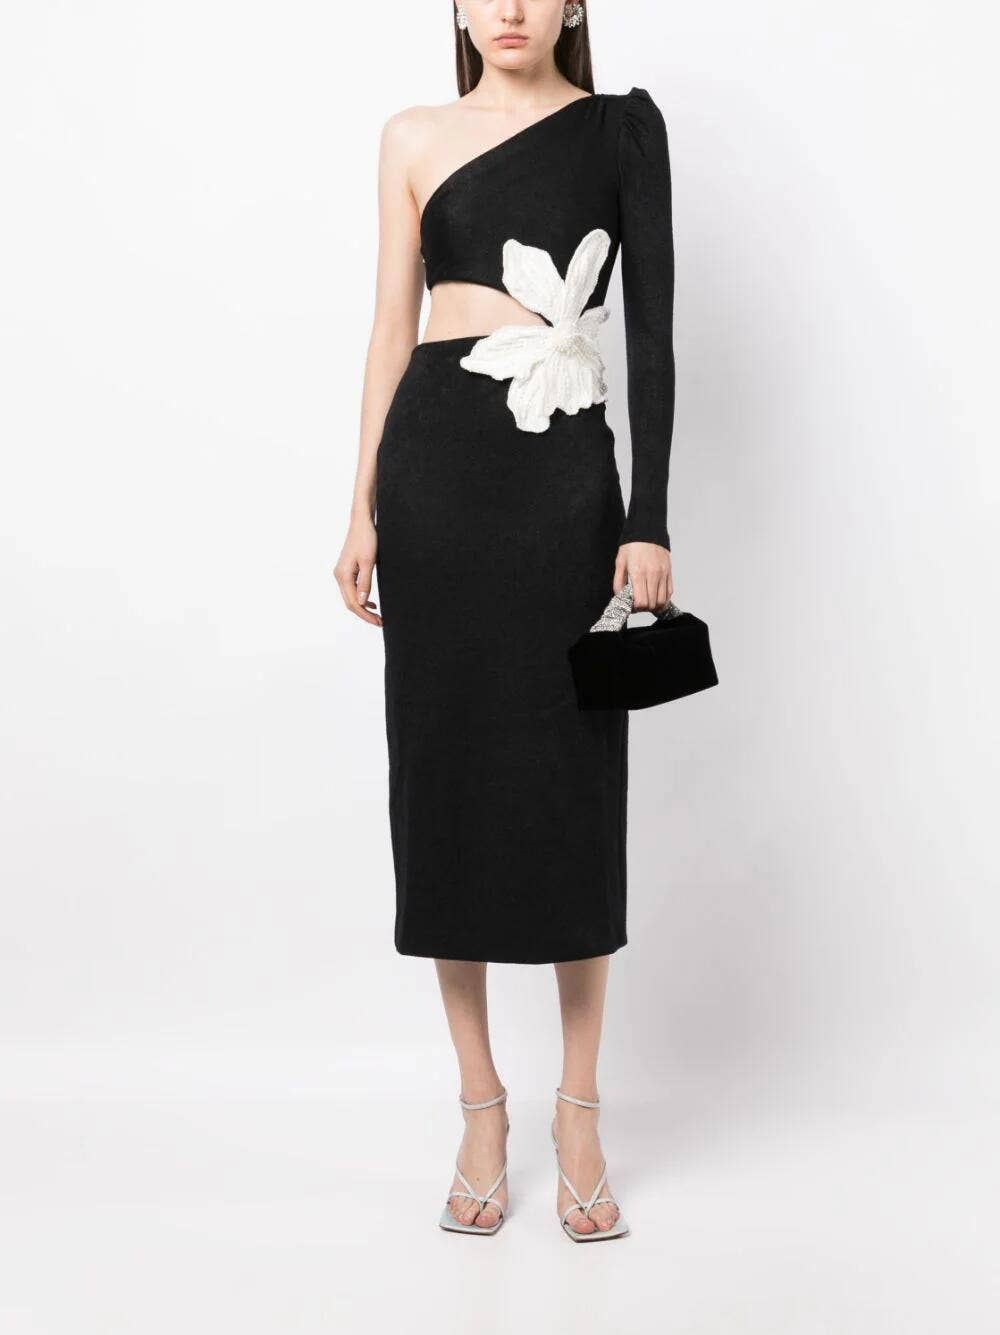 Buy Vintage Little Black Dress Pleated Skirt Sleeveless 1960s Formal Dress  Elegant Black Dress Size 5 Online in India 